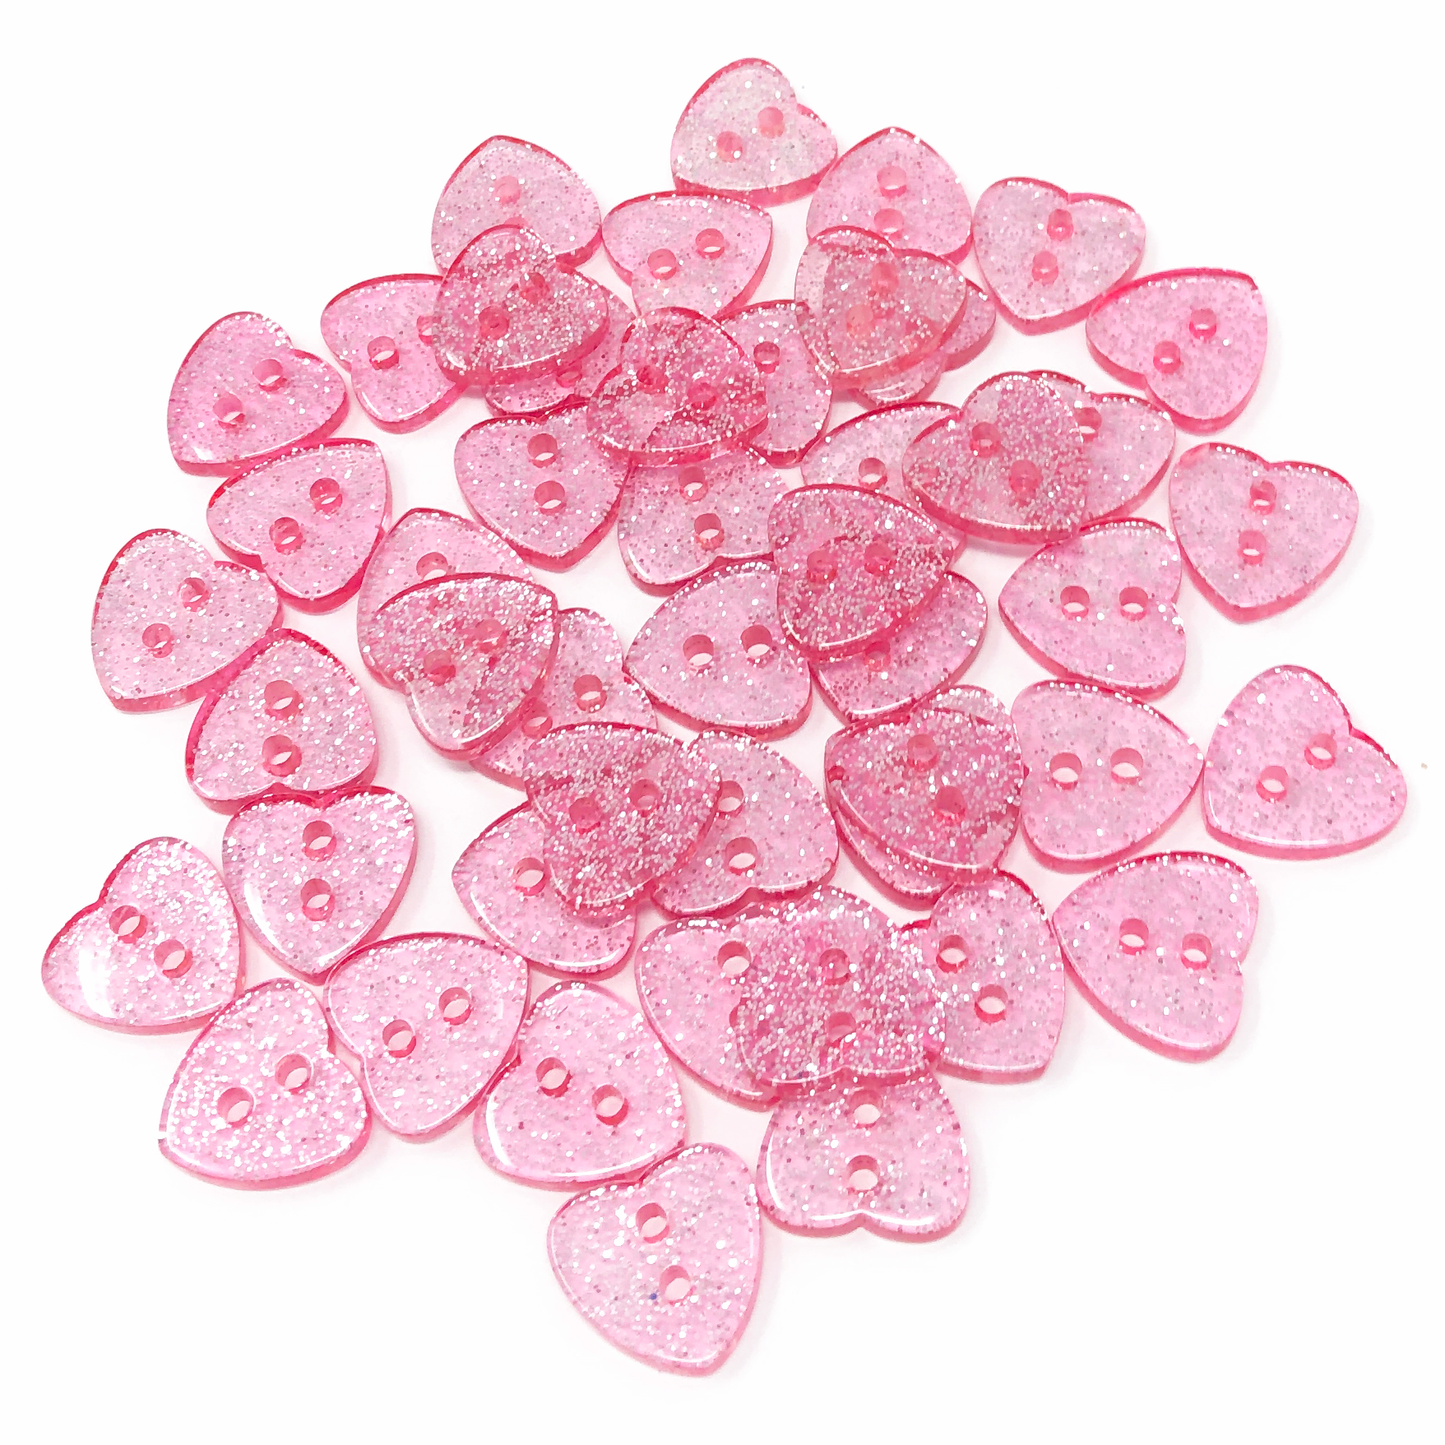 Pink 50 Mix Glitter Heart 13mm Resin Buttons